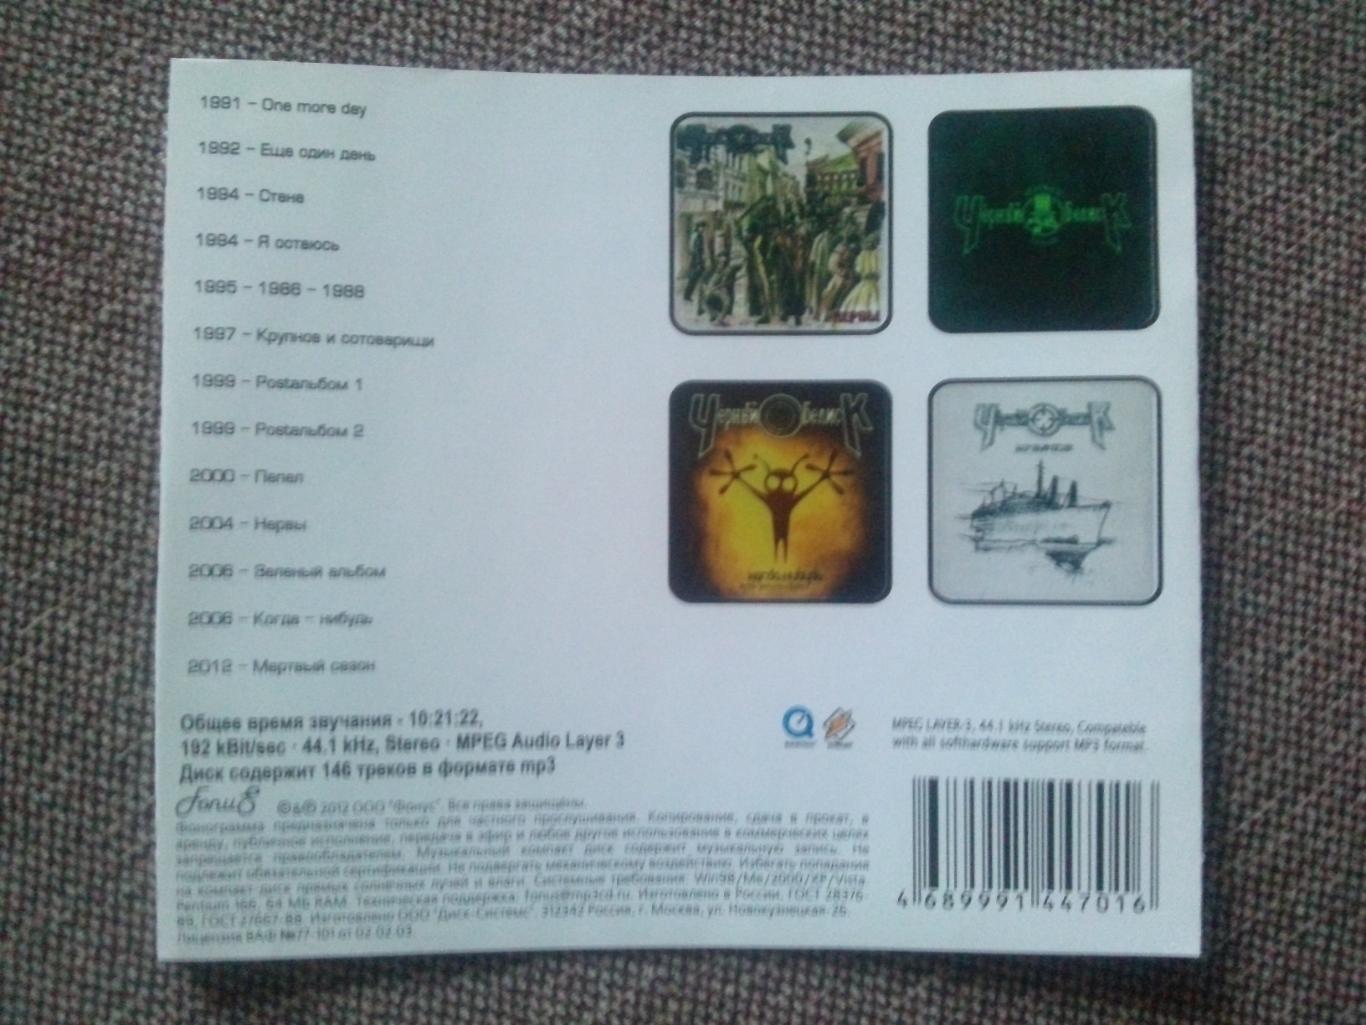 MP - 3 CD : группа Черный обелиск 1991 - 2012 гг. (13 альбомов) Русский рок 6